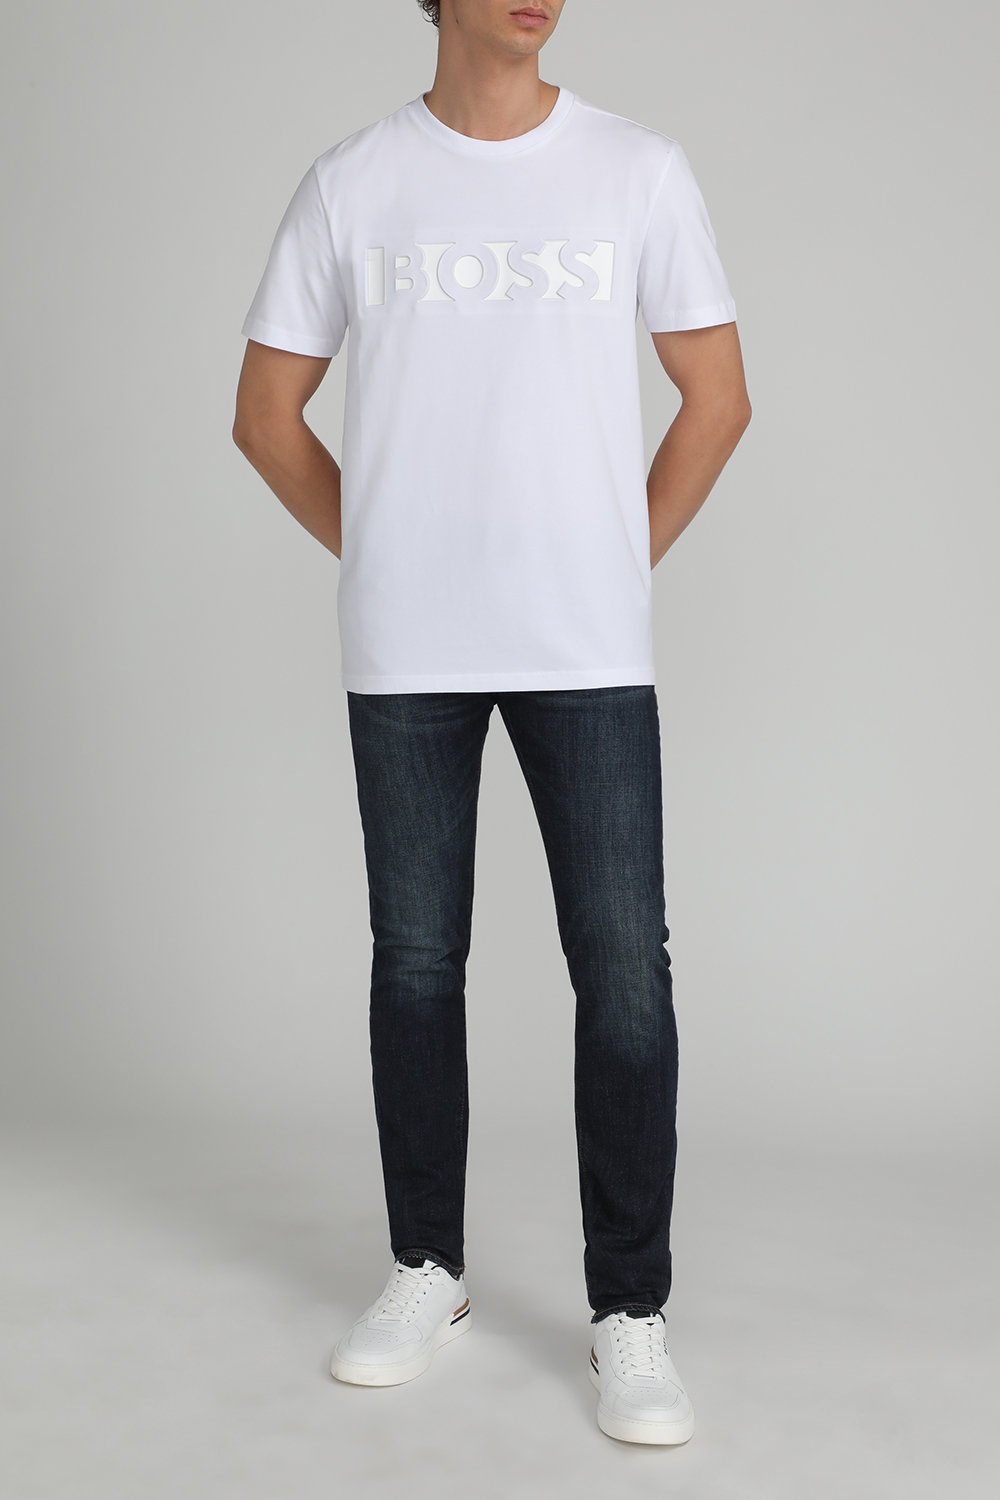 חולצת טי עם הדפס BOSS